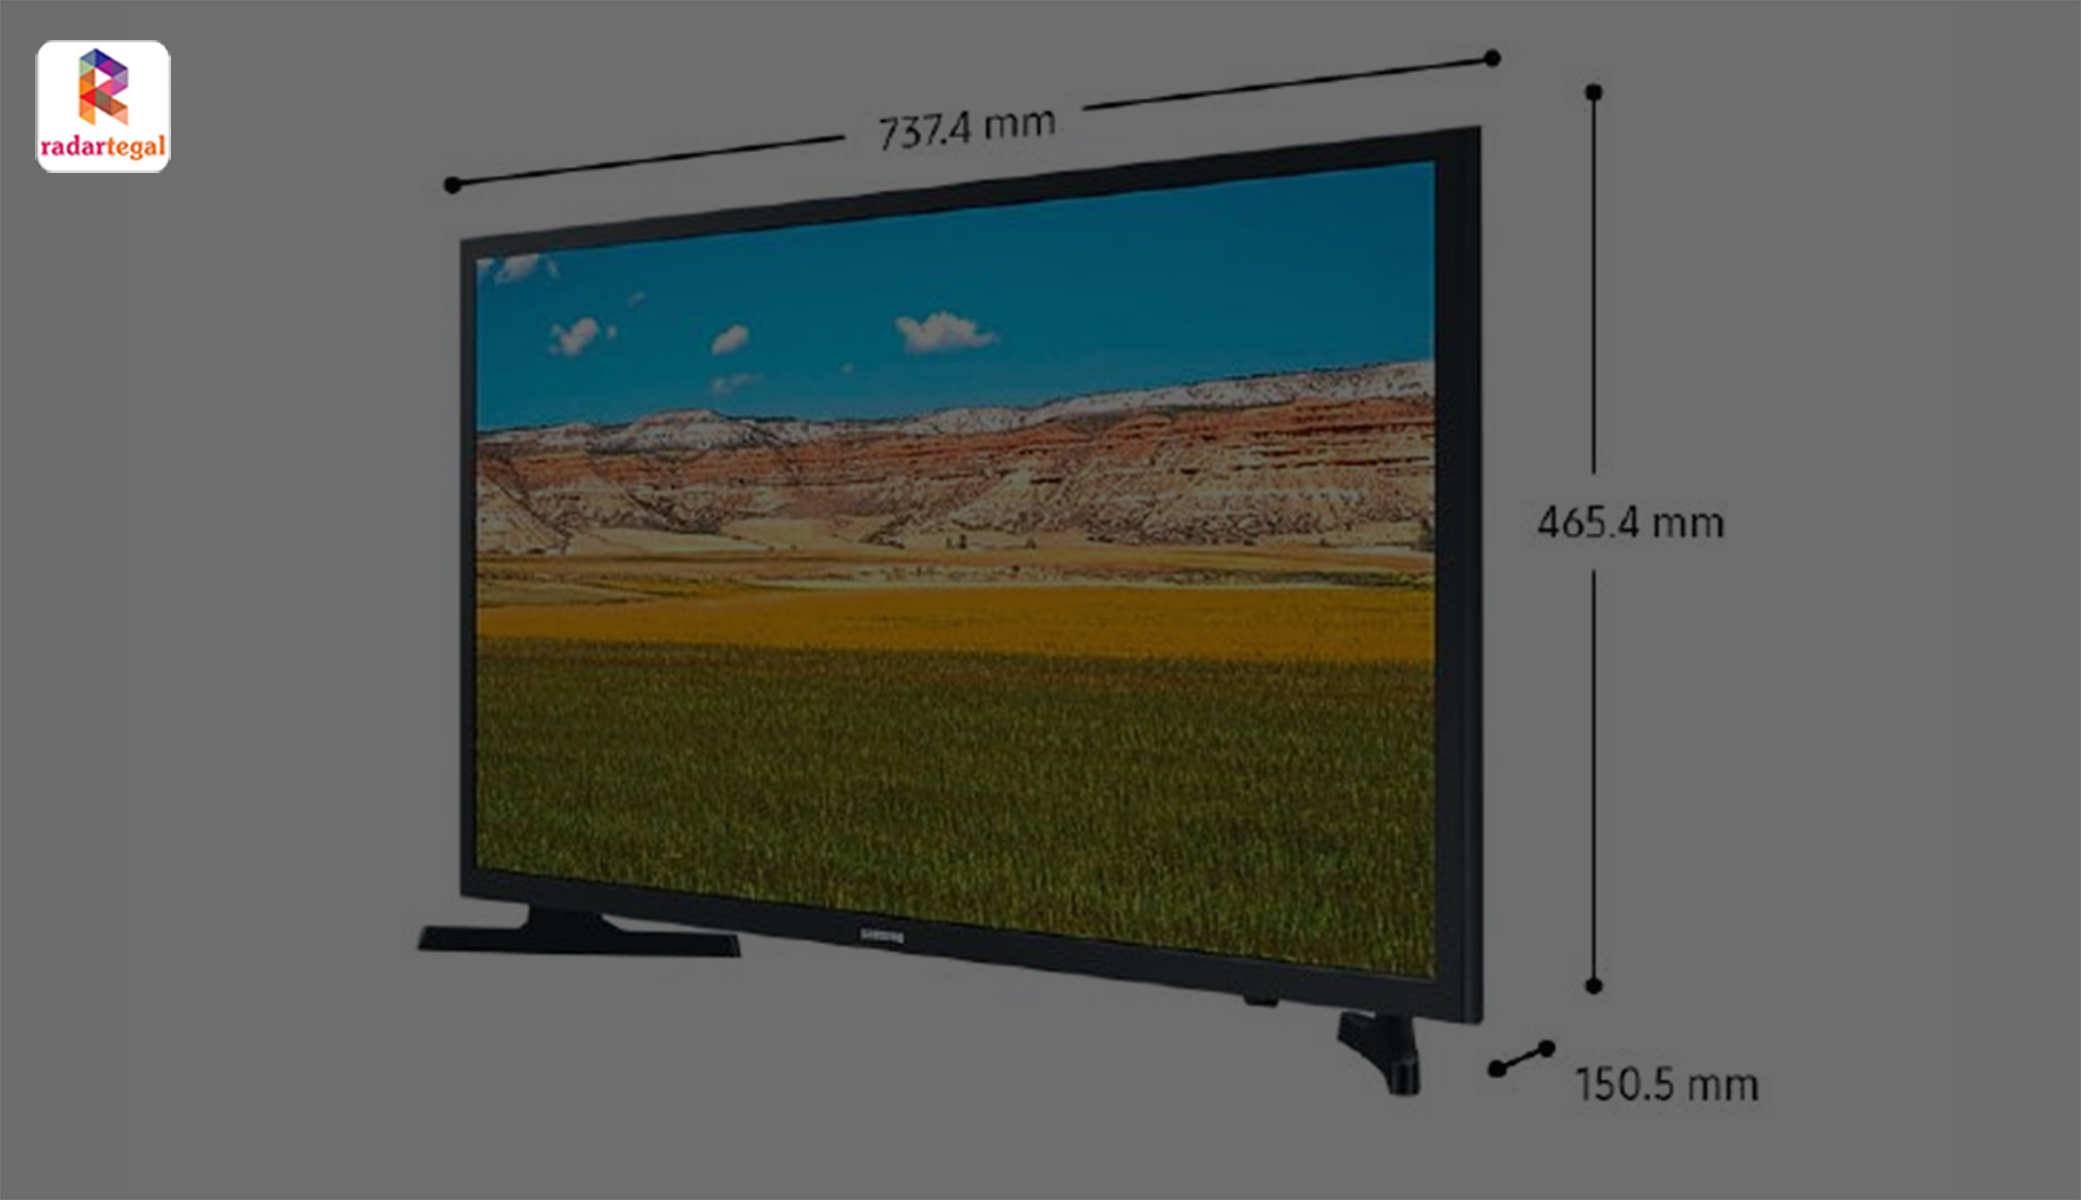 Harga Mulai 2 Jutaan, Smart TV Samsung T4500 Bisa Tangkap Sinyal Digital Tanpa STB